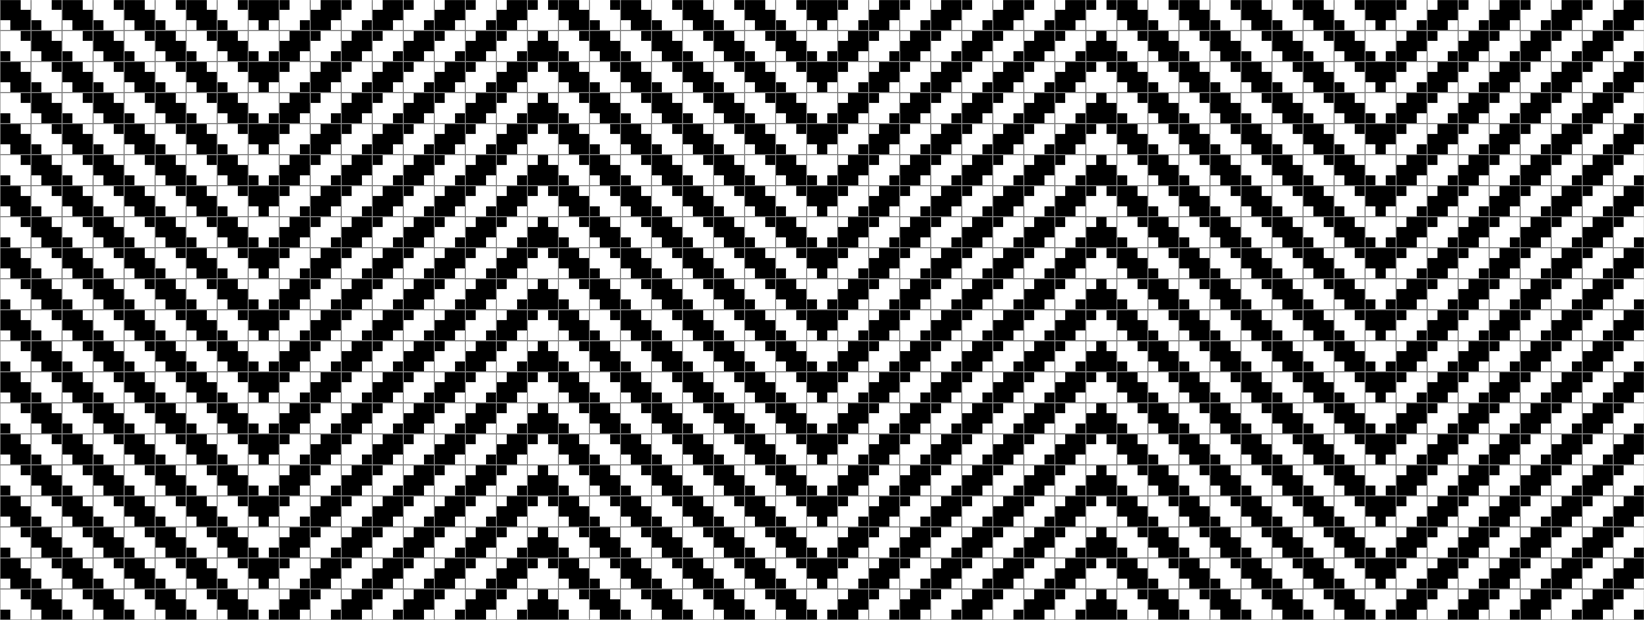 Kitaoka's illusion, monochrome